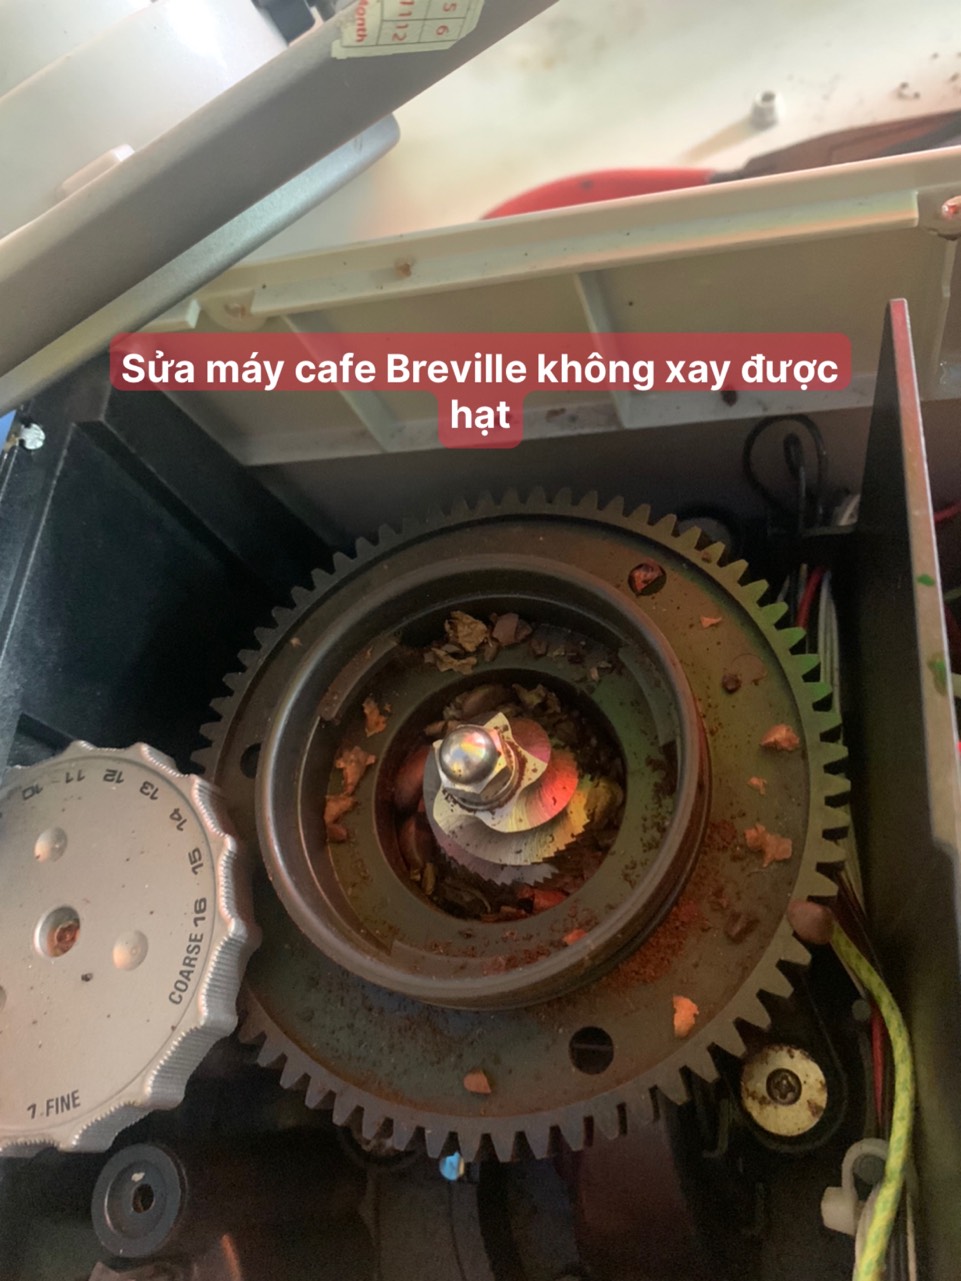 z4407193289582 3411651b710014699ce341e3a6c1072b - Sửa máy cafe Breville không xay được tại TP. Hồ Chí Minh